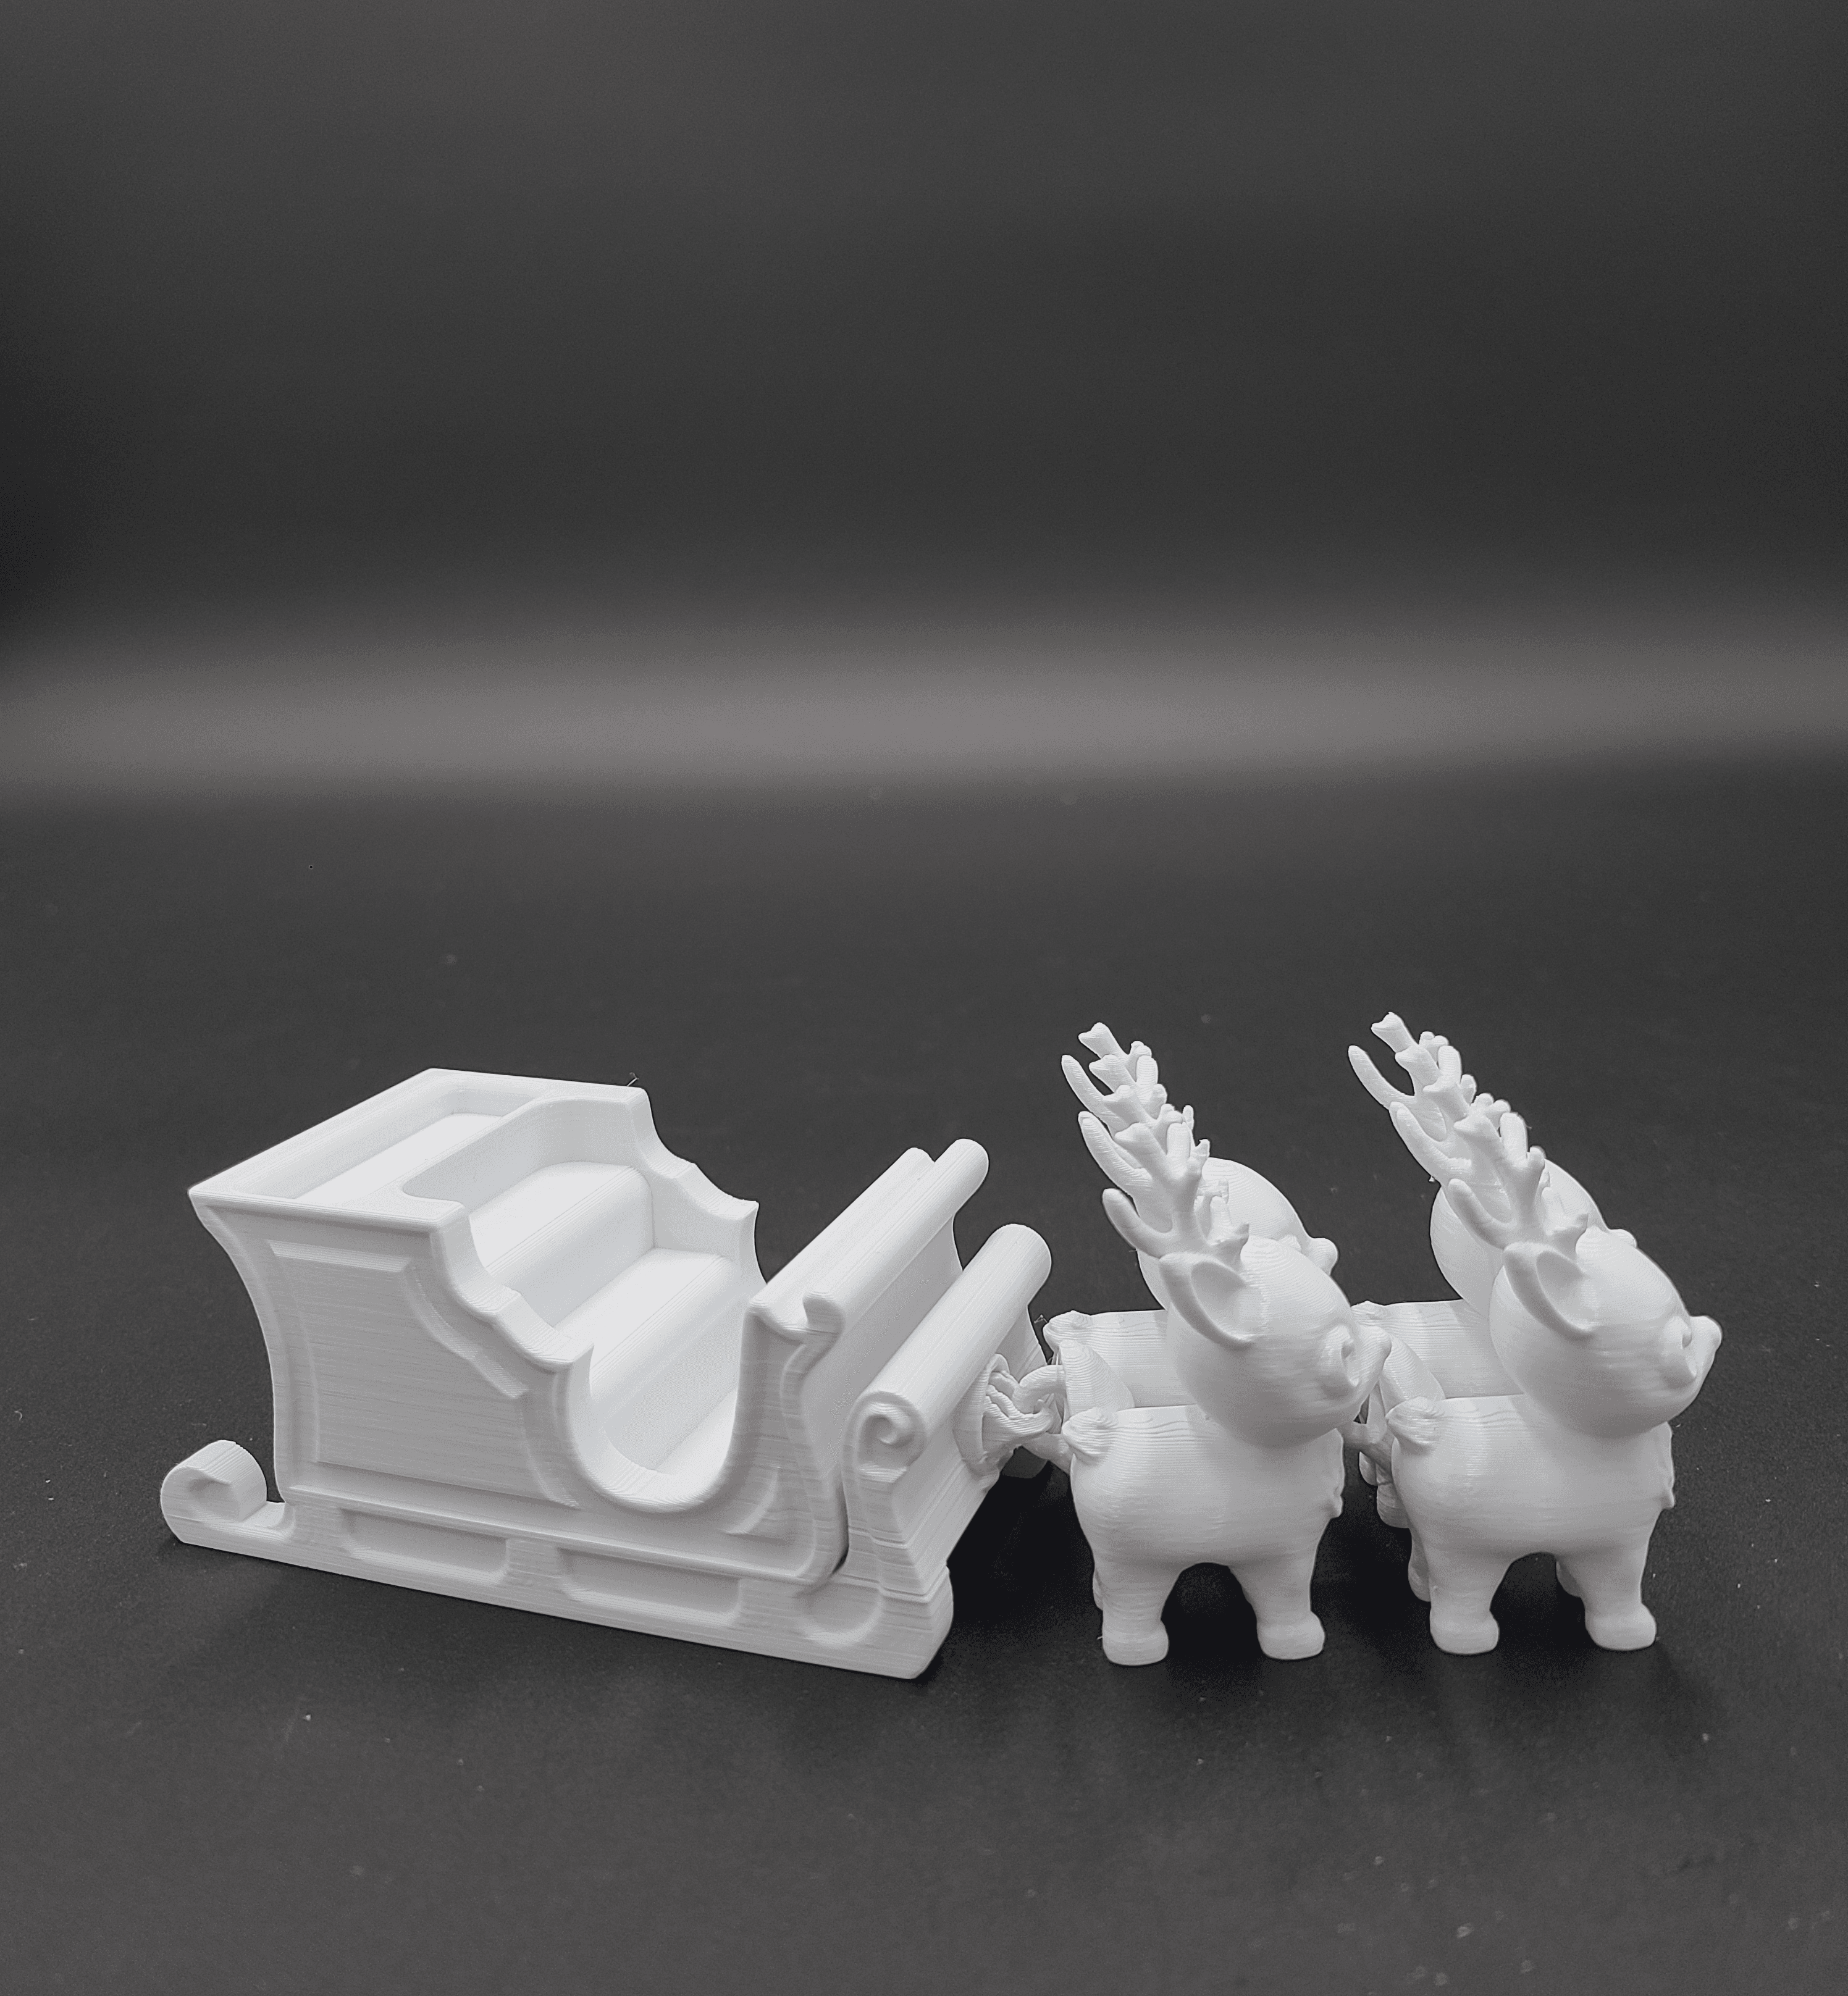 Fidget Herringbone Gears - 3D model by MakerTales on Thangs